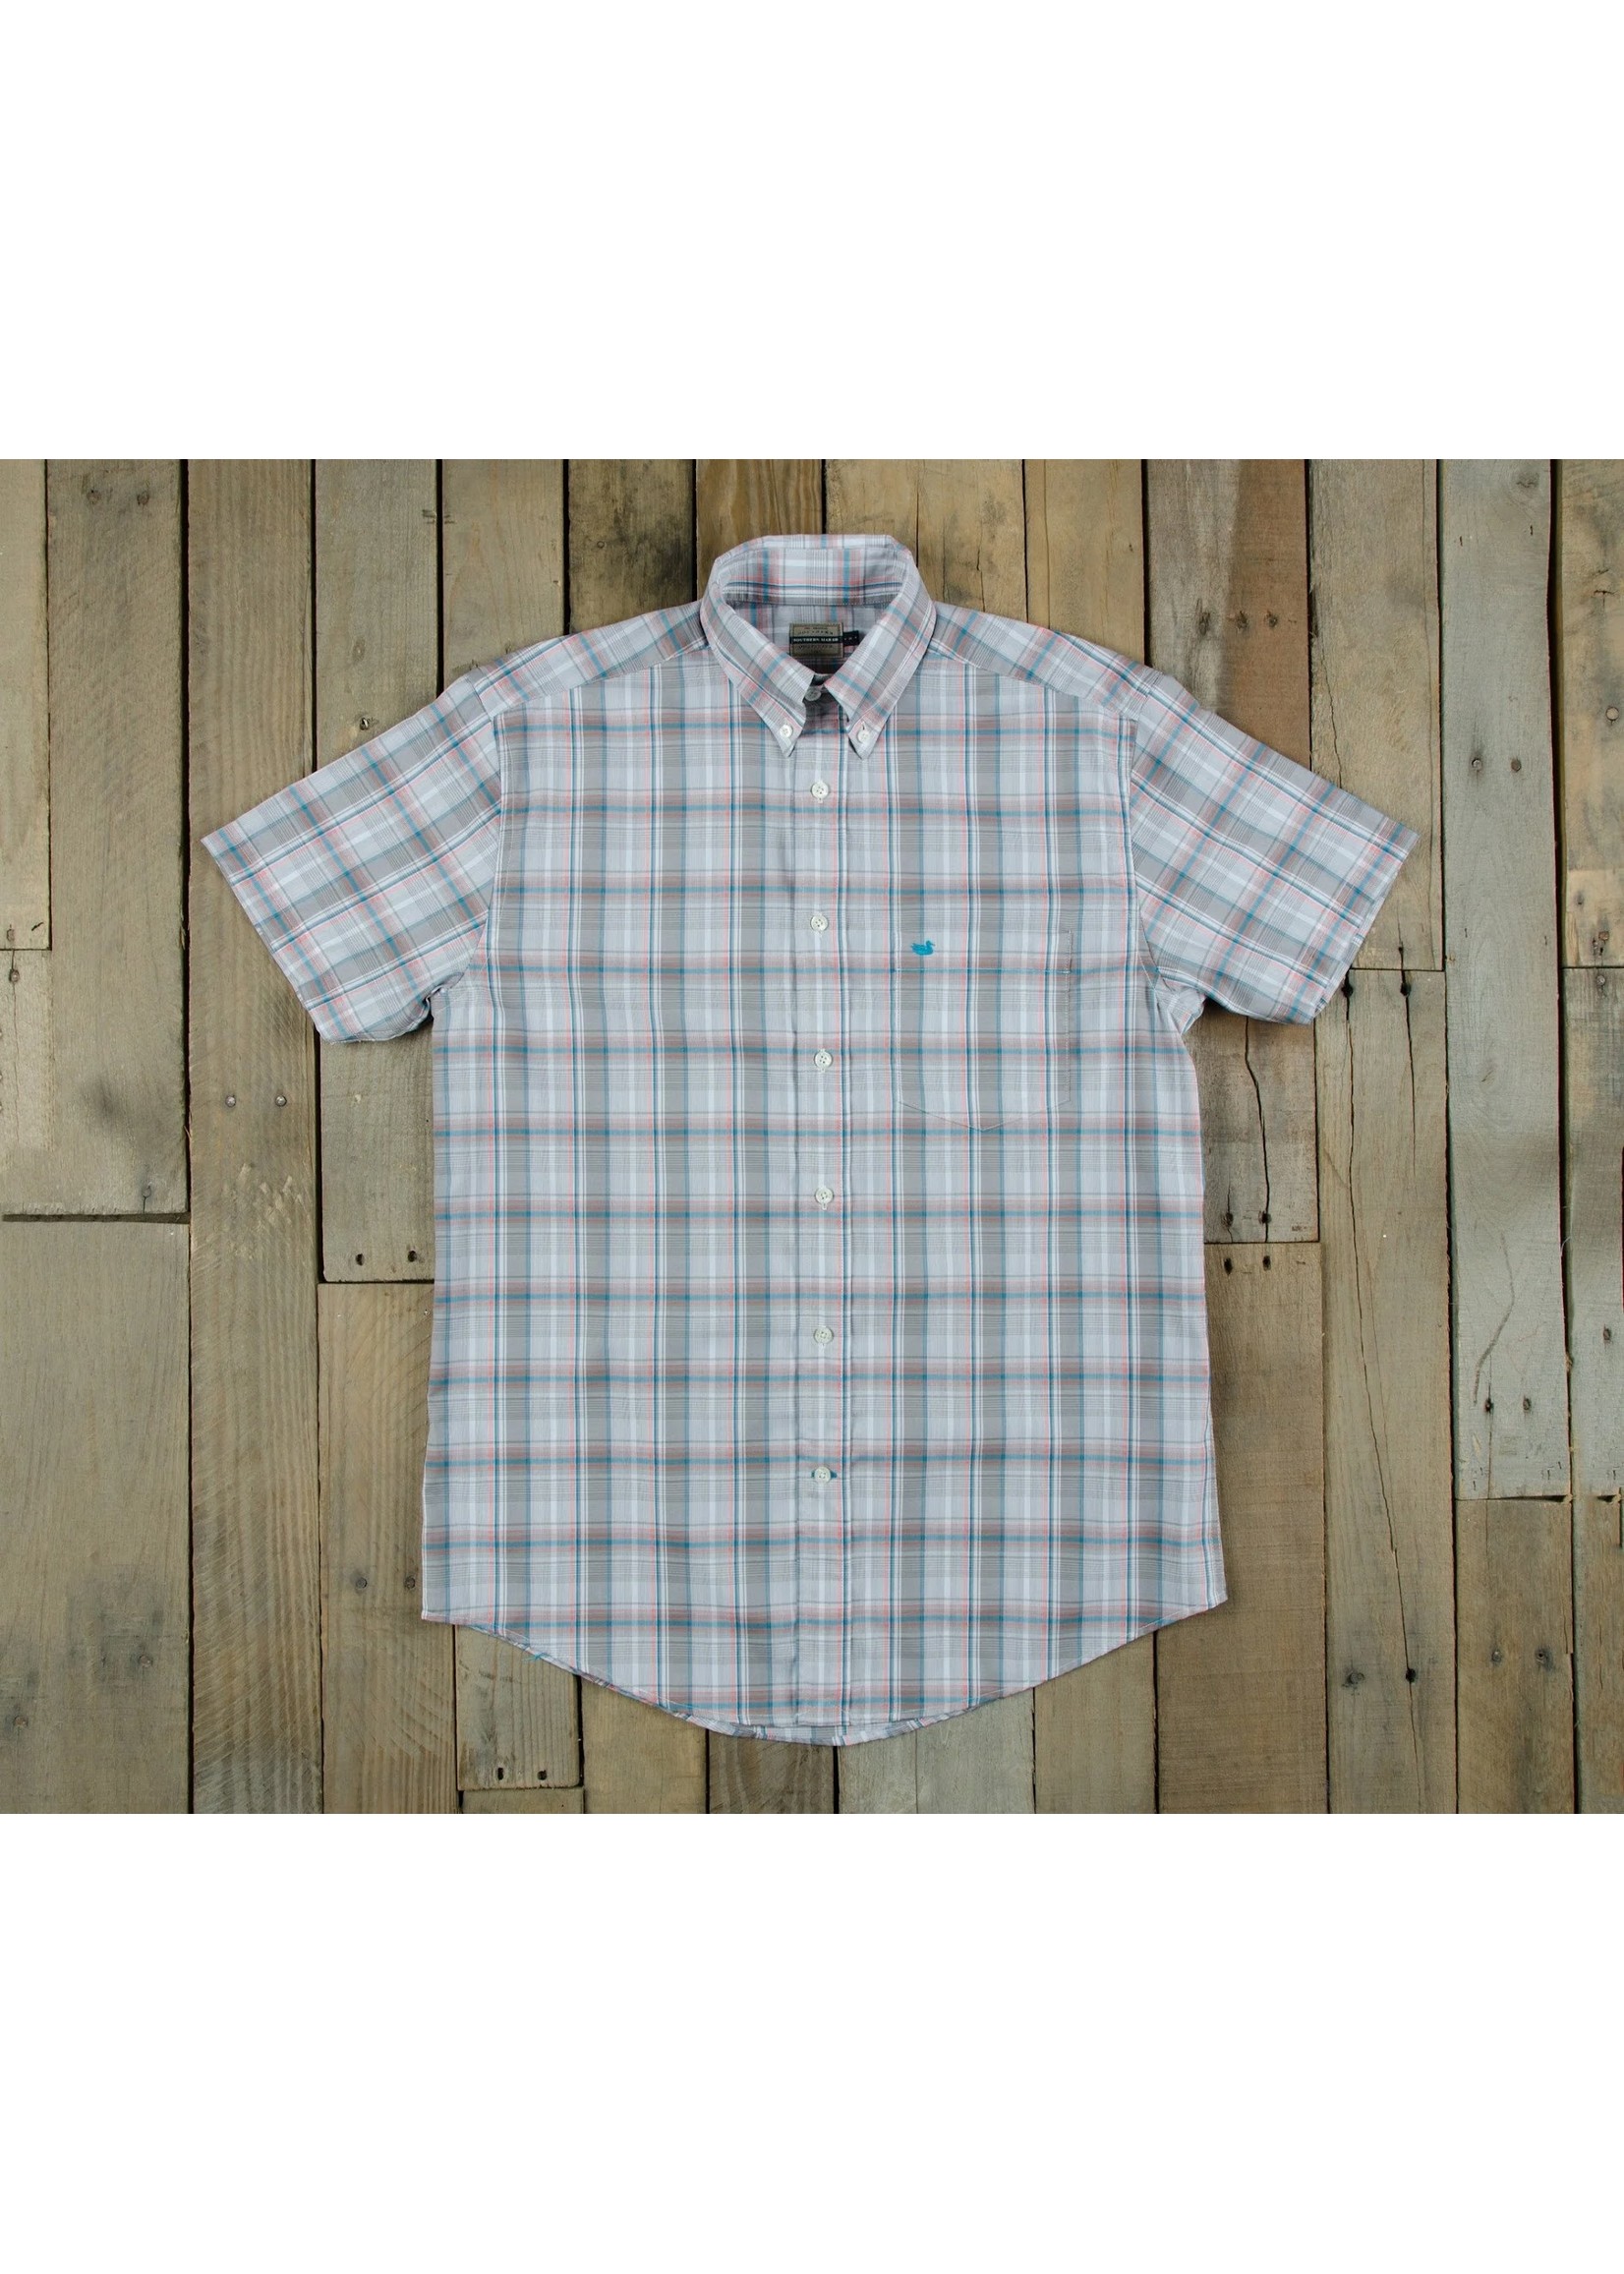 Southern Marsh Catawba Plaid Dress Shirt - Short Sleeve